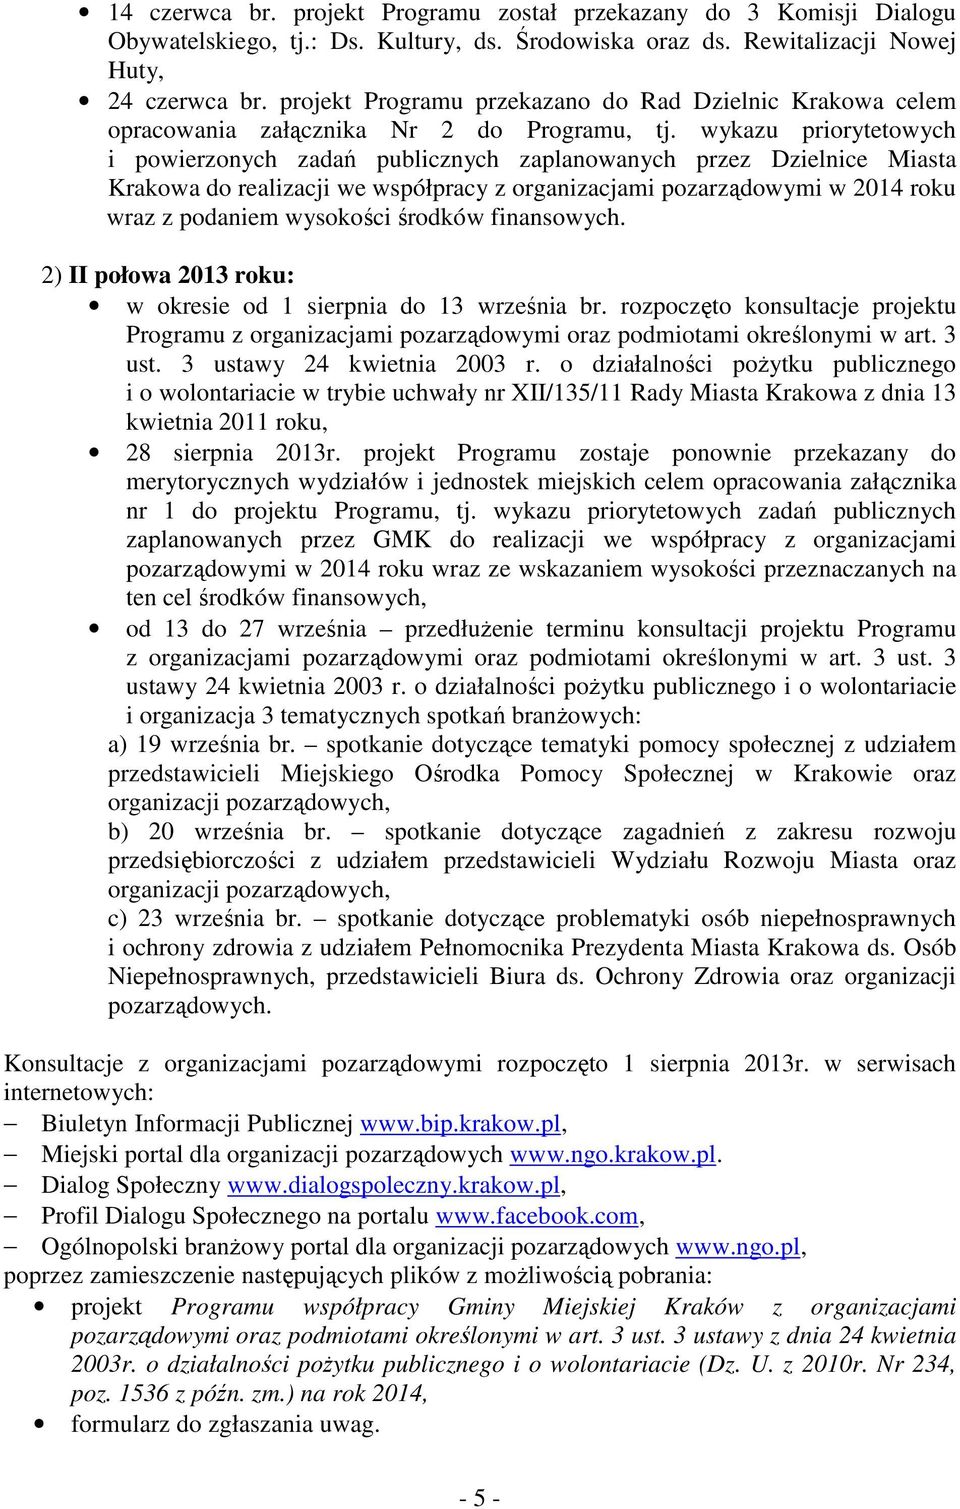 wykazu priorytetowych i powierzonych zadań publicznych zaplanowanych przez Dzielnice Miasta Krakowa do realizacji we współpracy z organizacjami pozarządowymi w 2014 roku wraz z podaniem wysokości